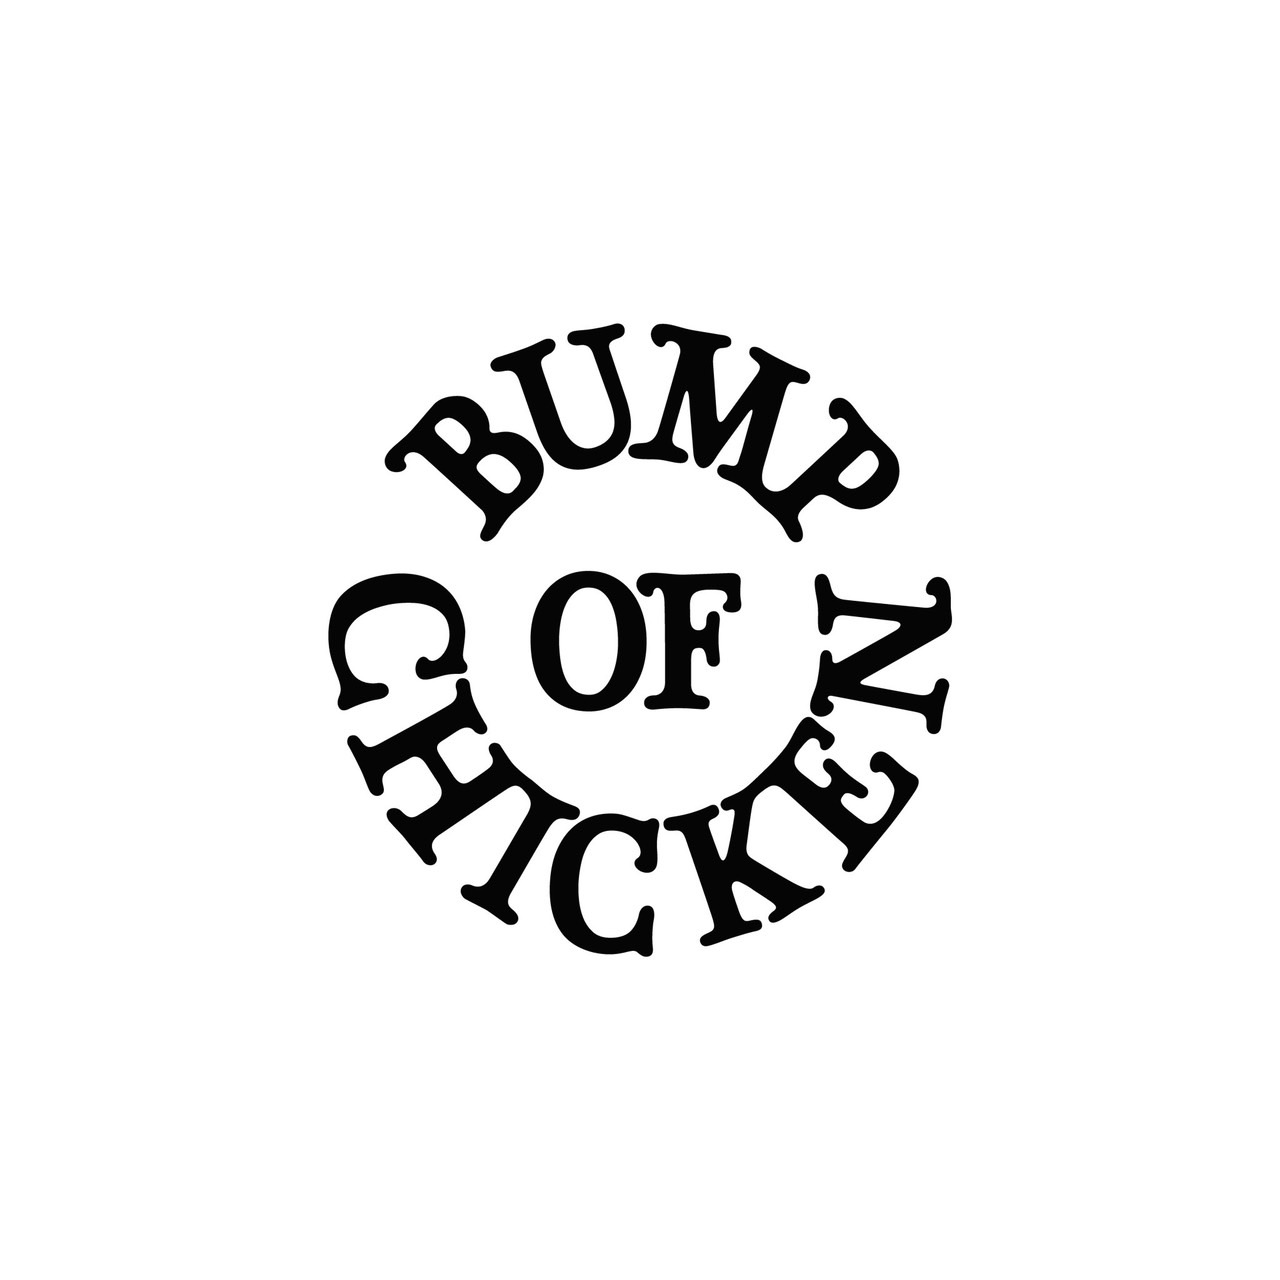 BUMP OF CHICKEN official website